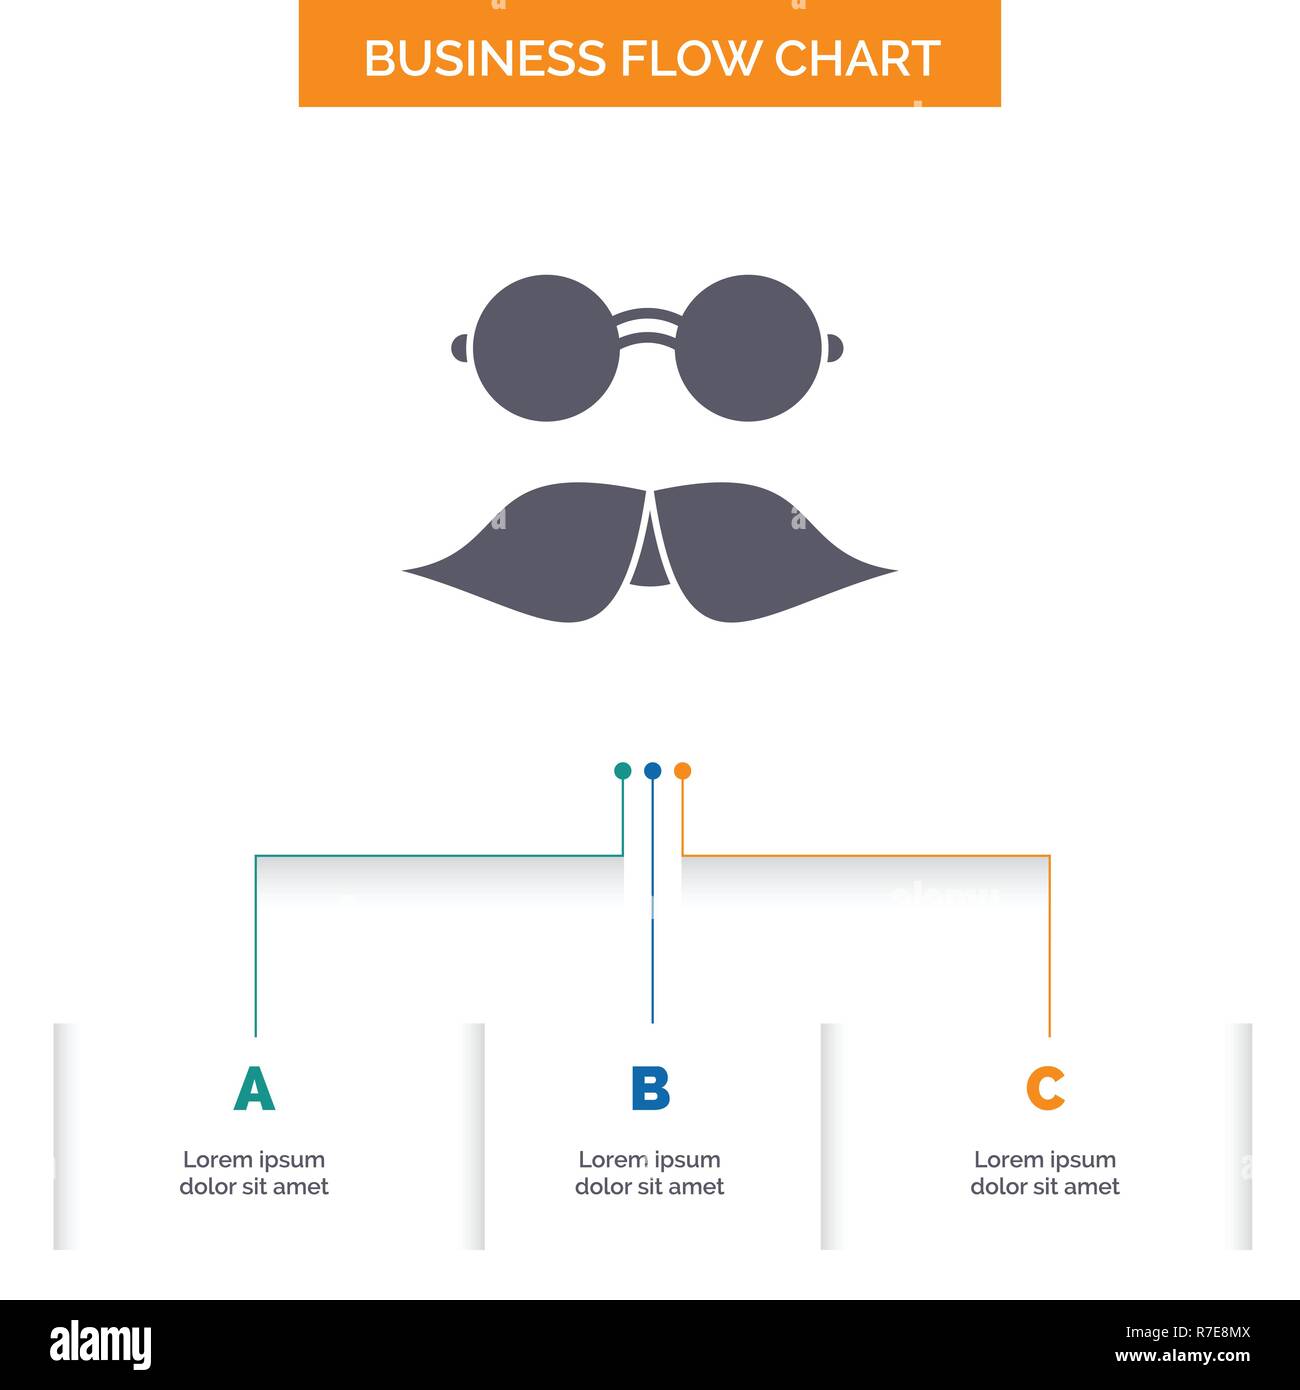 Moustache Chart